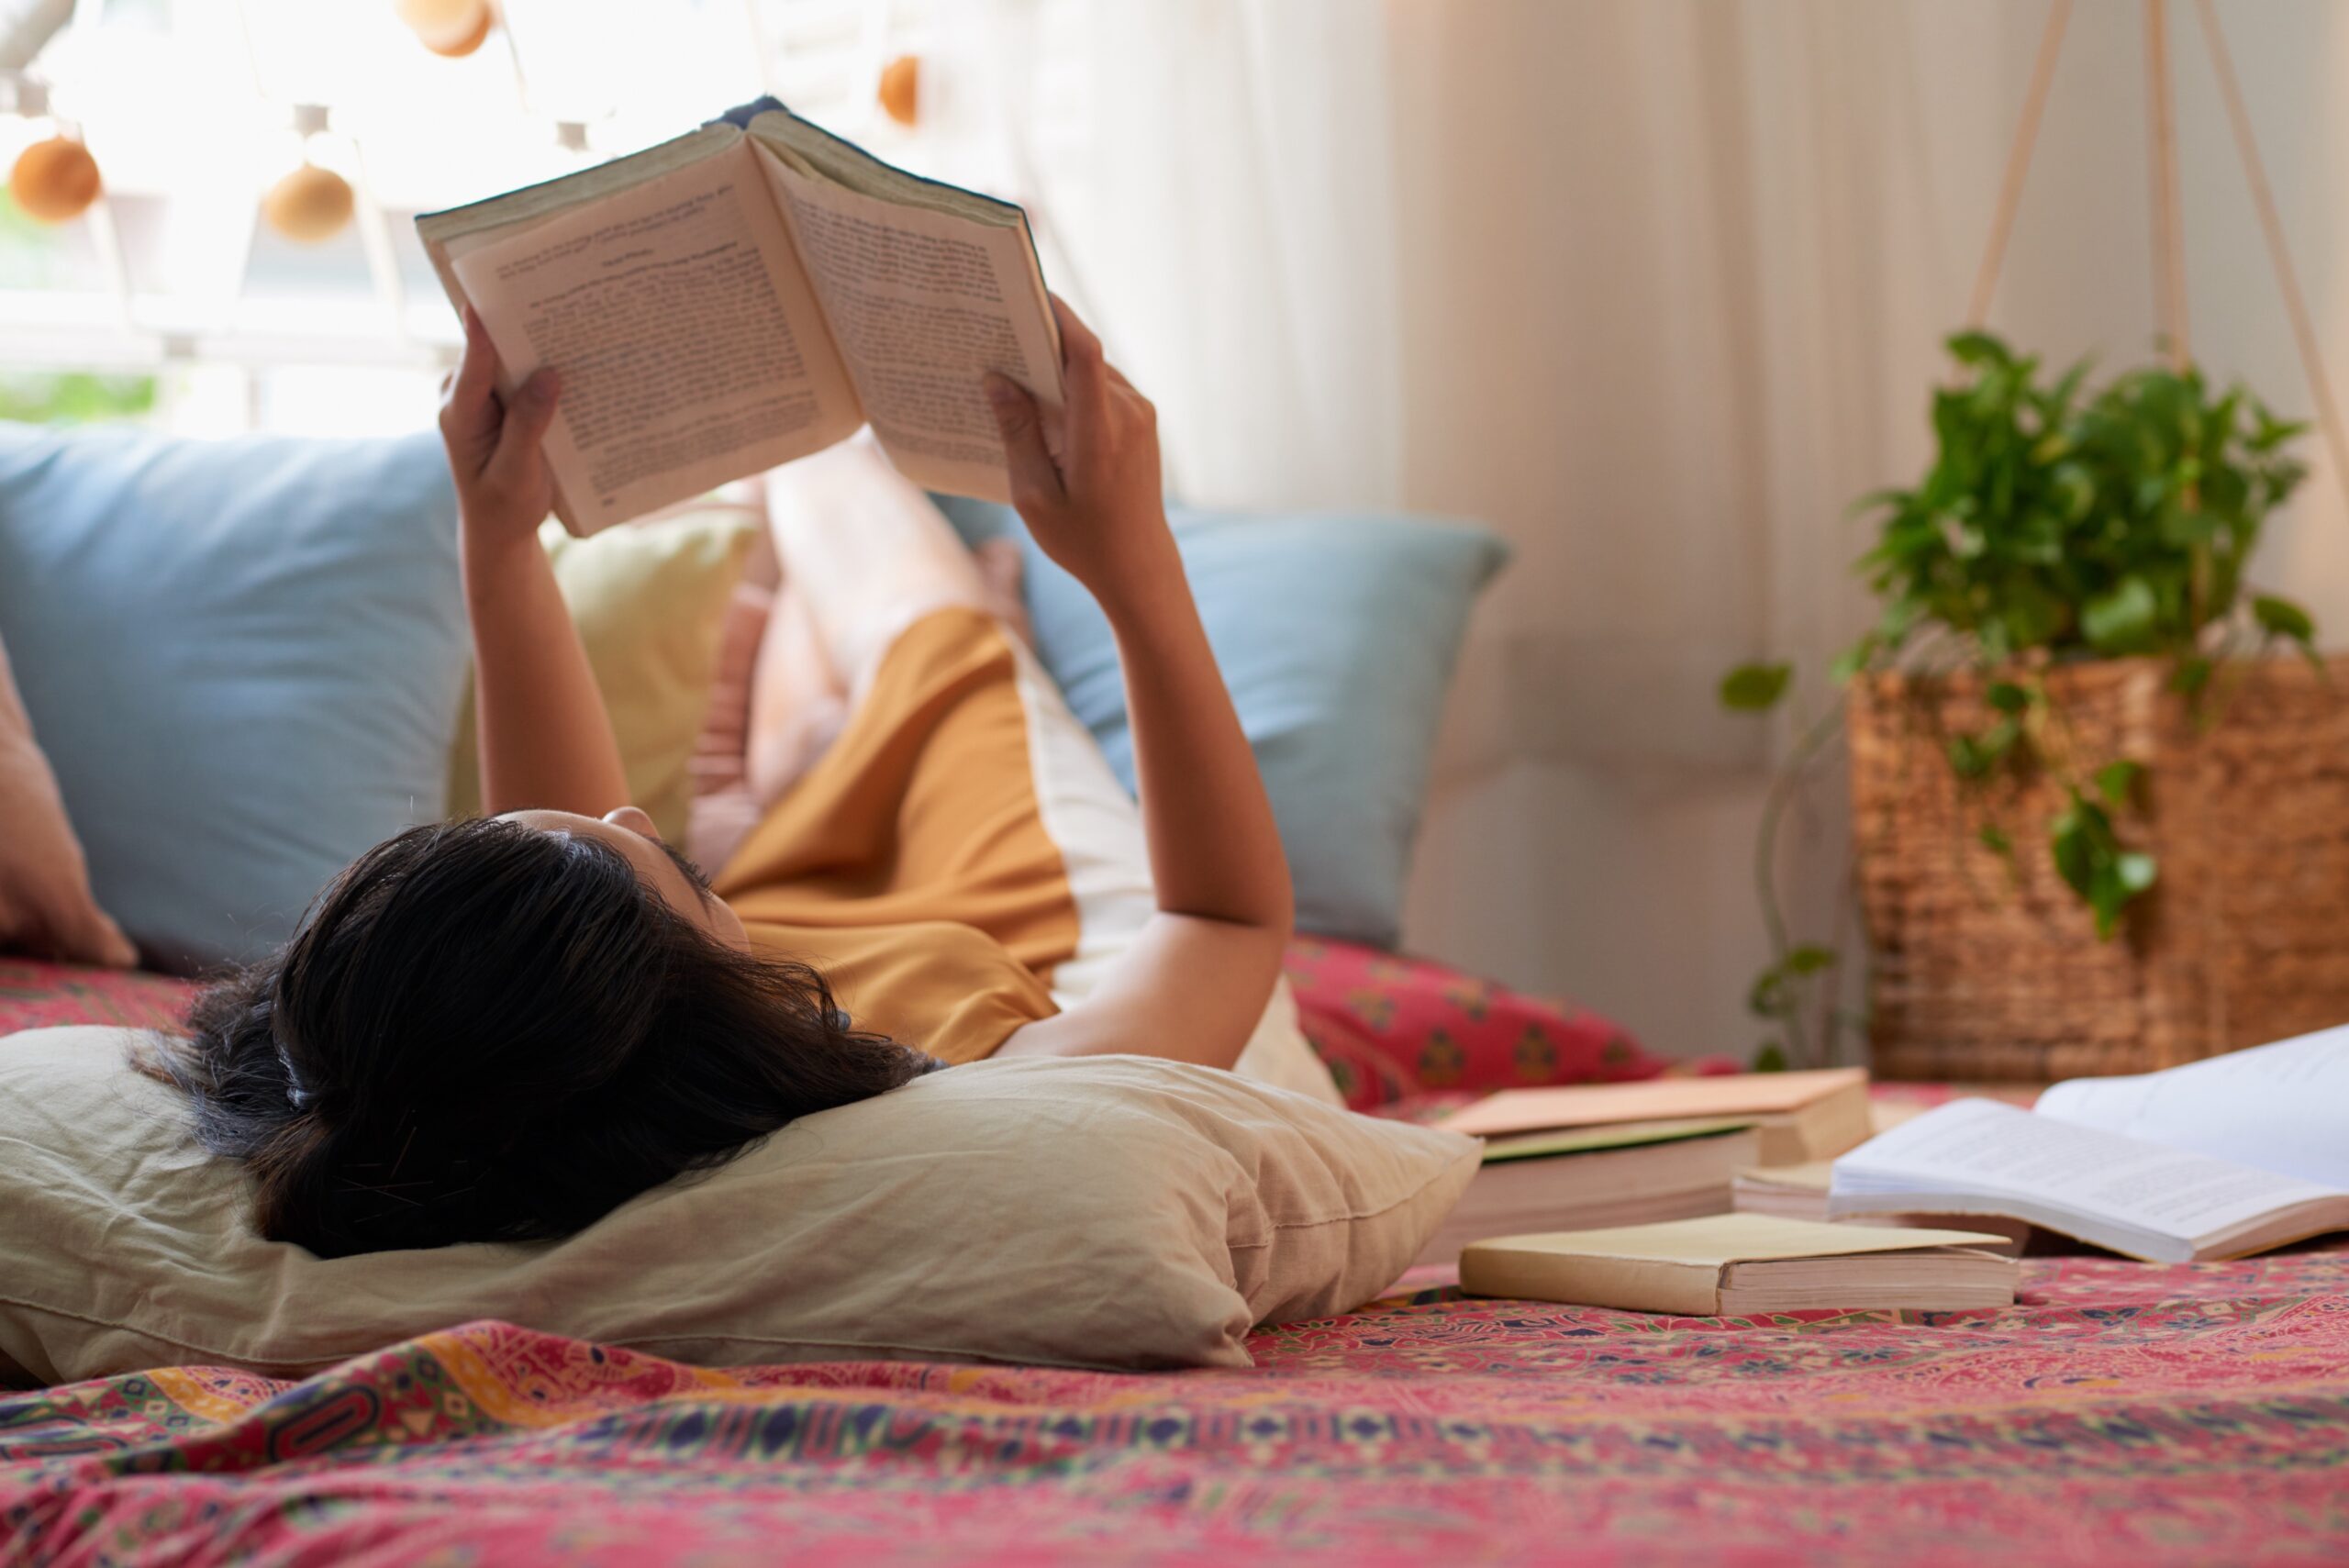 Pessoa deitada lendo um livro em um ambiente caseiro relaxante, cercada por plantas e luz natural.